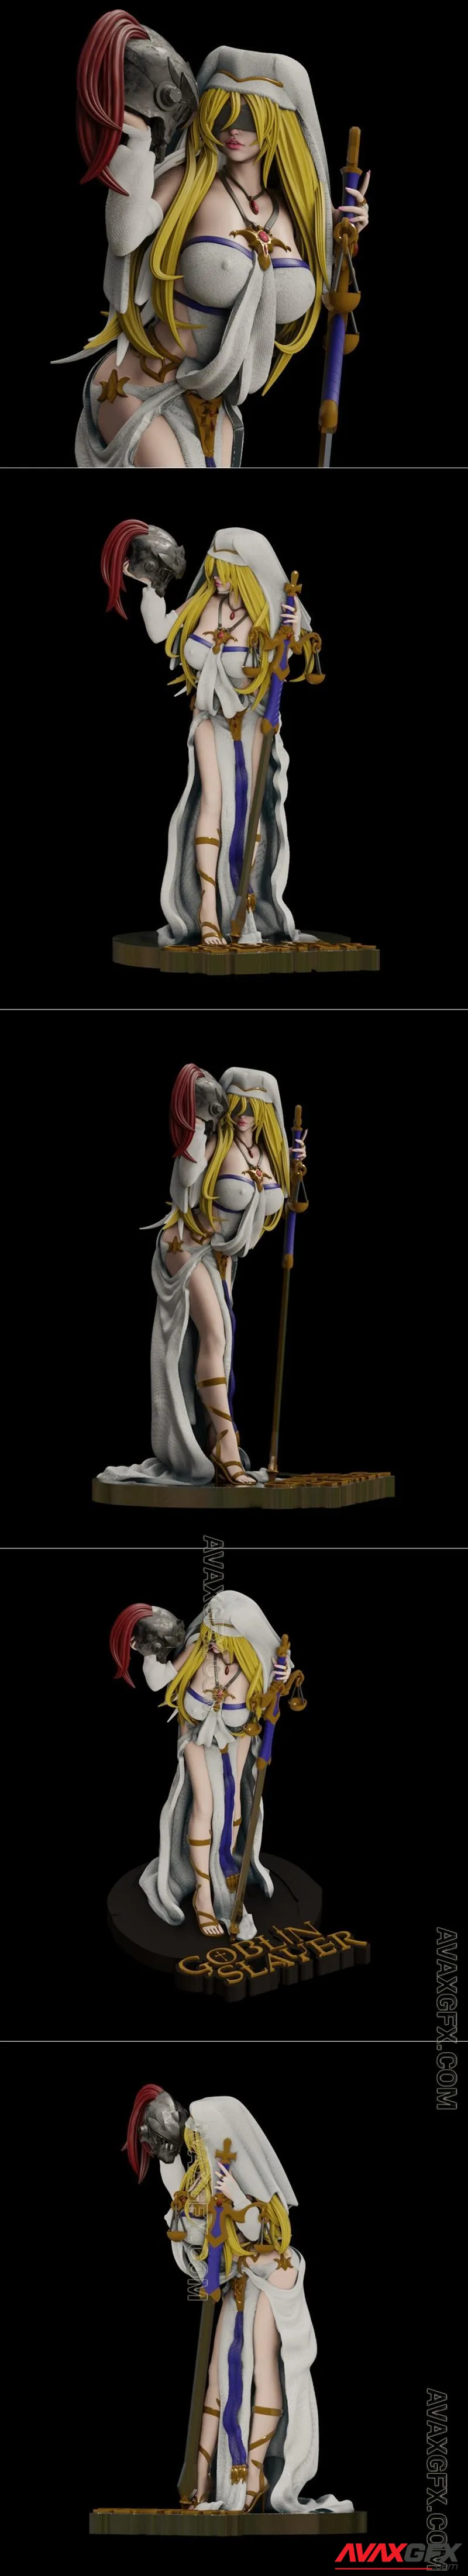 PgGasta - Goblin Slayer Sword Maiden - STL 3D Model